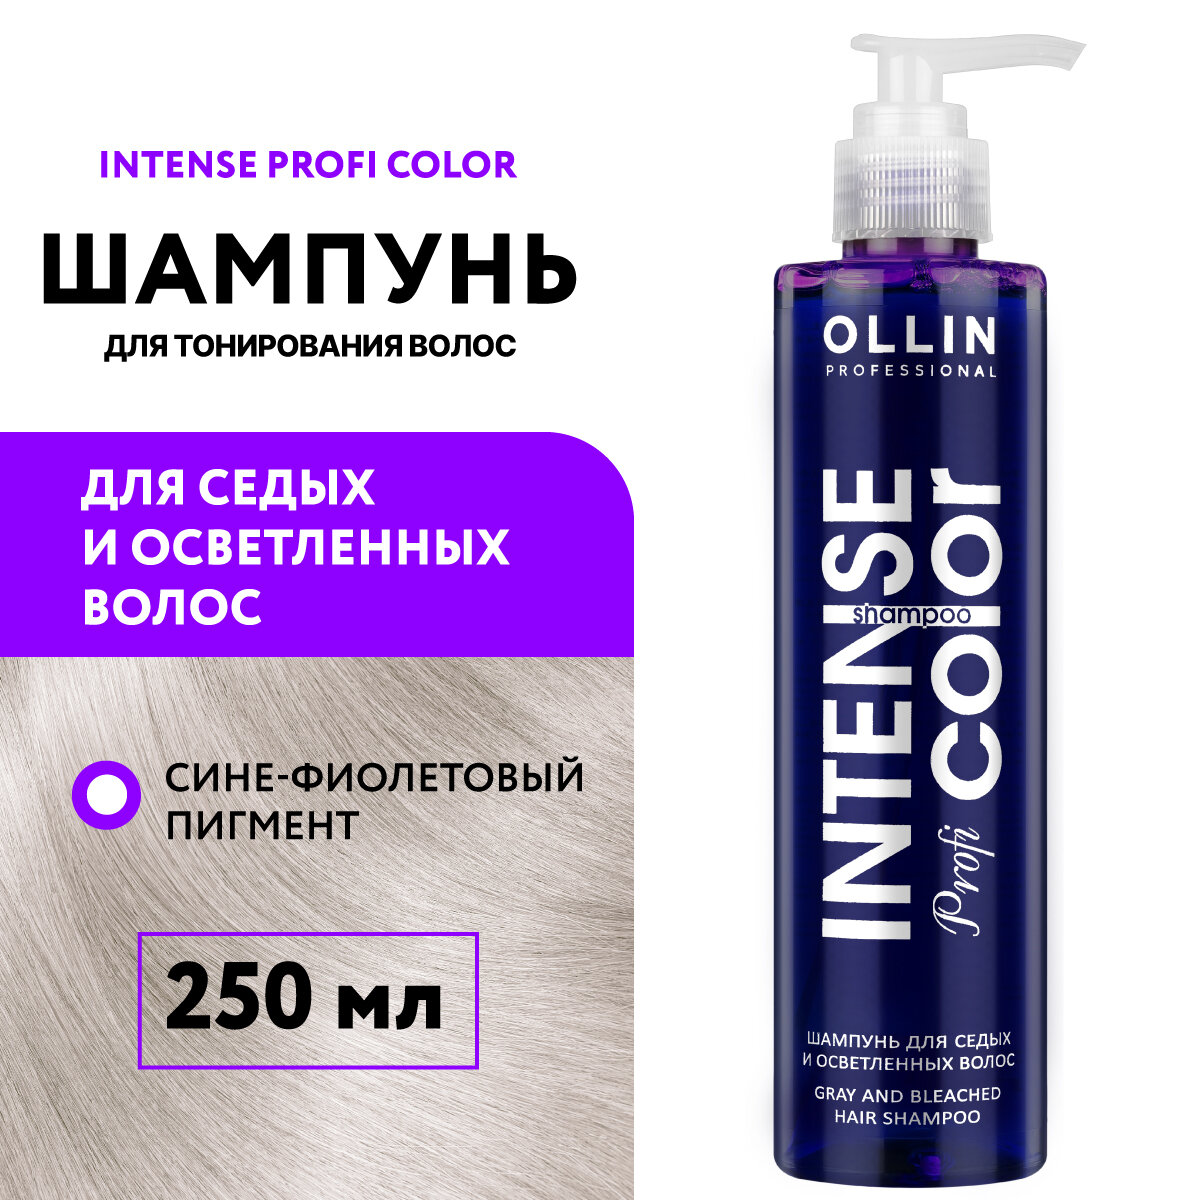 Ollin Professional Шампунь для седых и осветленных волос, 250 мл (Ollin Professional, ) - фото №7